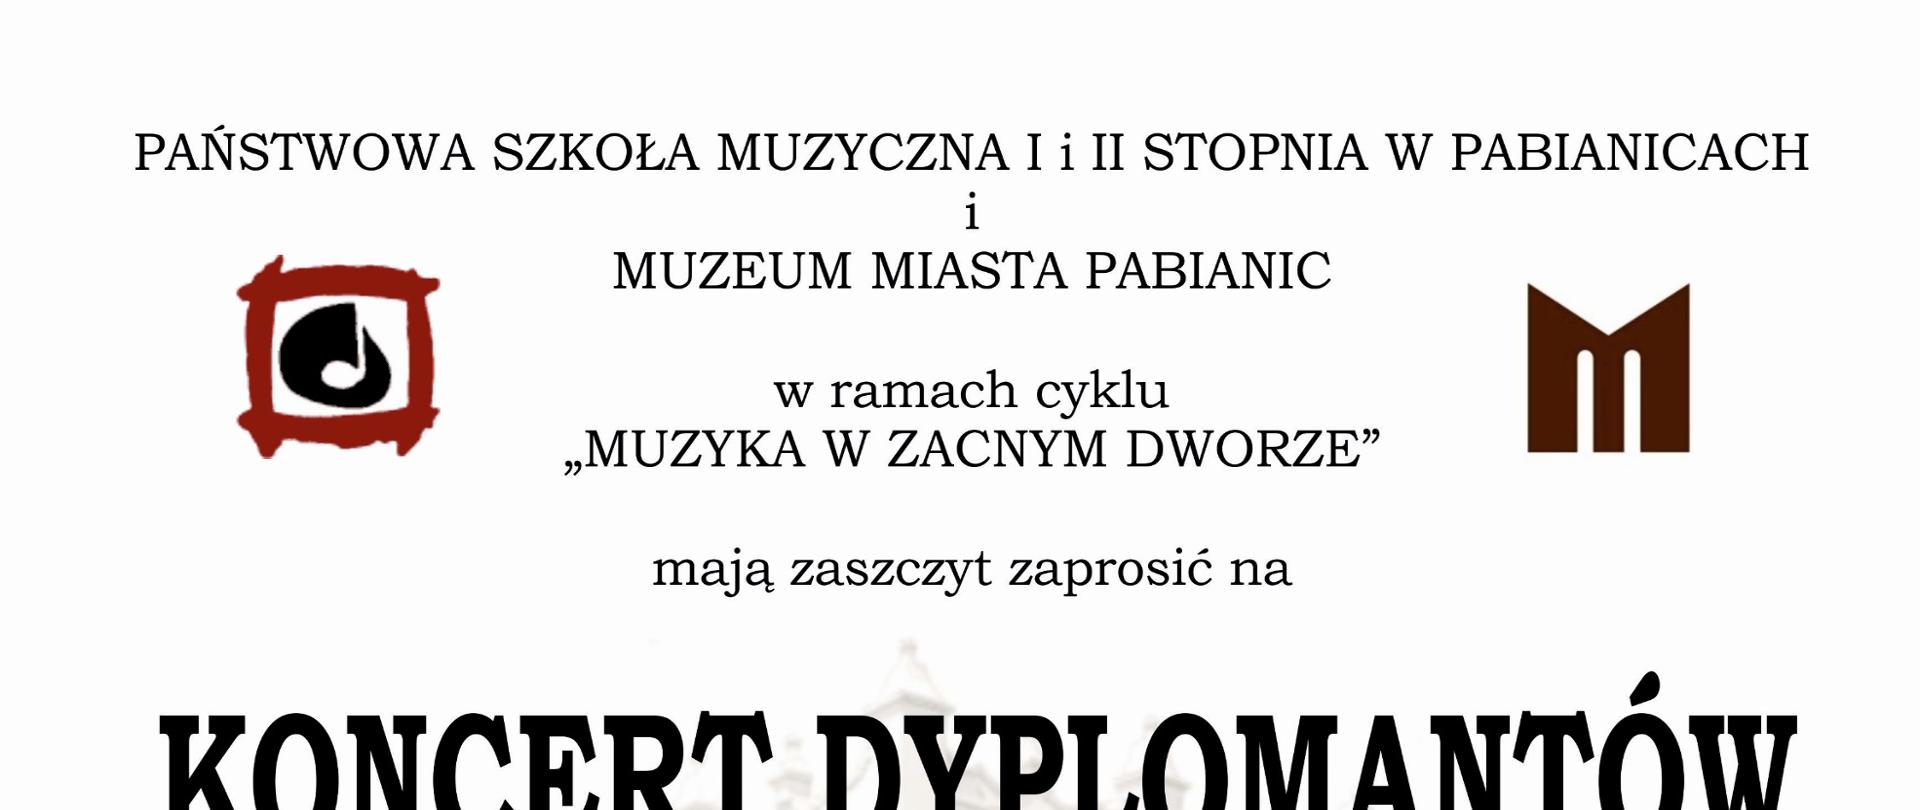 Jasna grafika z umieszczonym w tle budynkiem Muzeum Miasta Pabianic informująca o Koncercie Dyplomantów PSM II st. w Pabianicach. Termin 22.06.2022 r. godz. 18